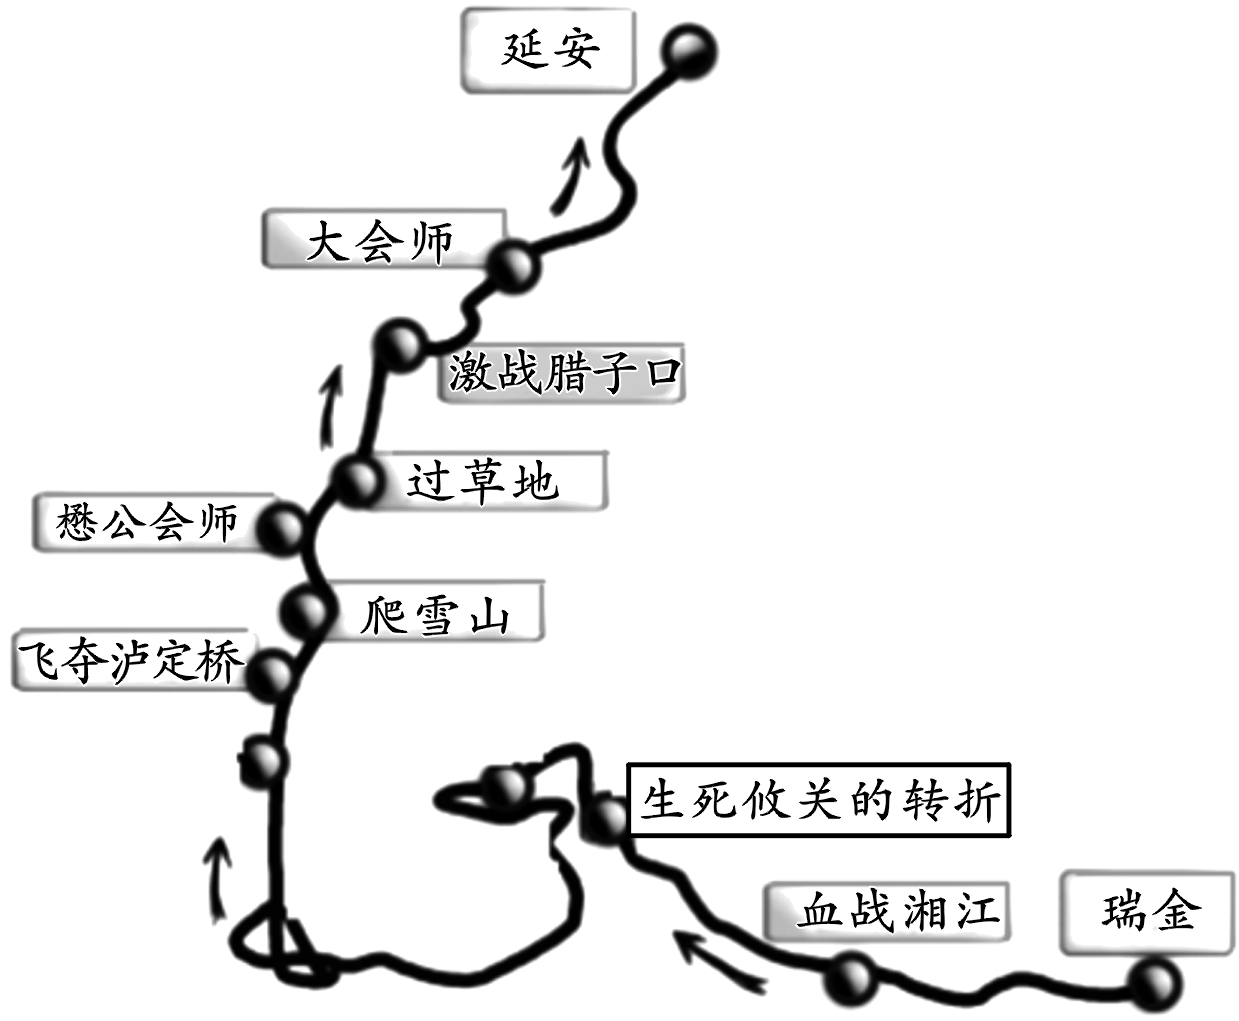 下图所示为中国工农红军长征路线图图中生死攸关的转折和大会师分别指